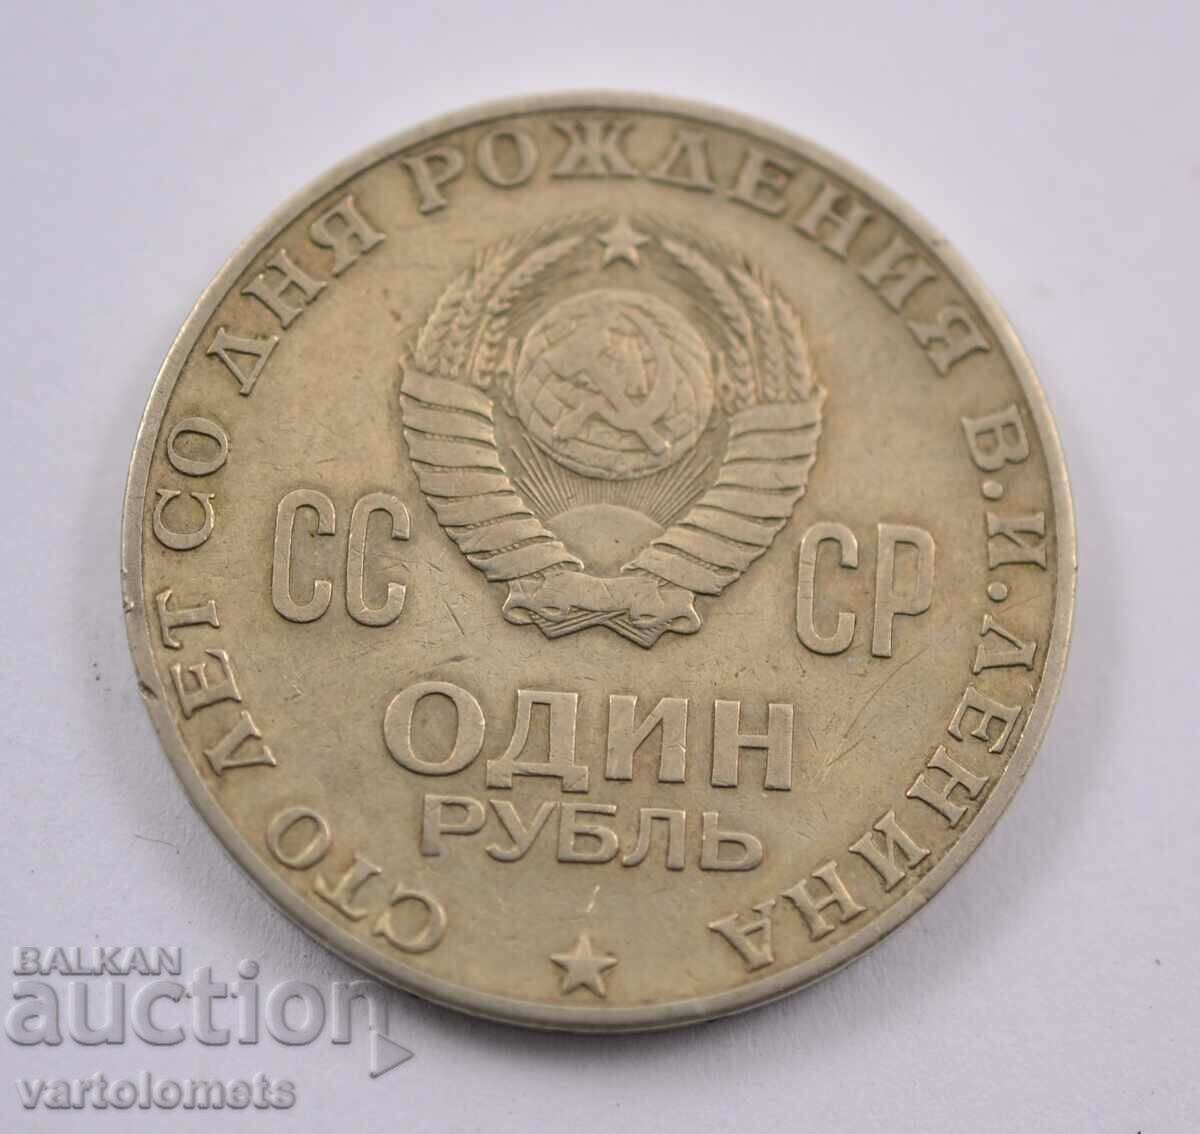 1 ρούβλι, 1970 - ΕΣΣΔ 100 χρόνια από τη γέννηση του Βλαντιμίρ Λένιν